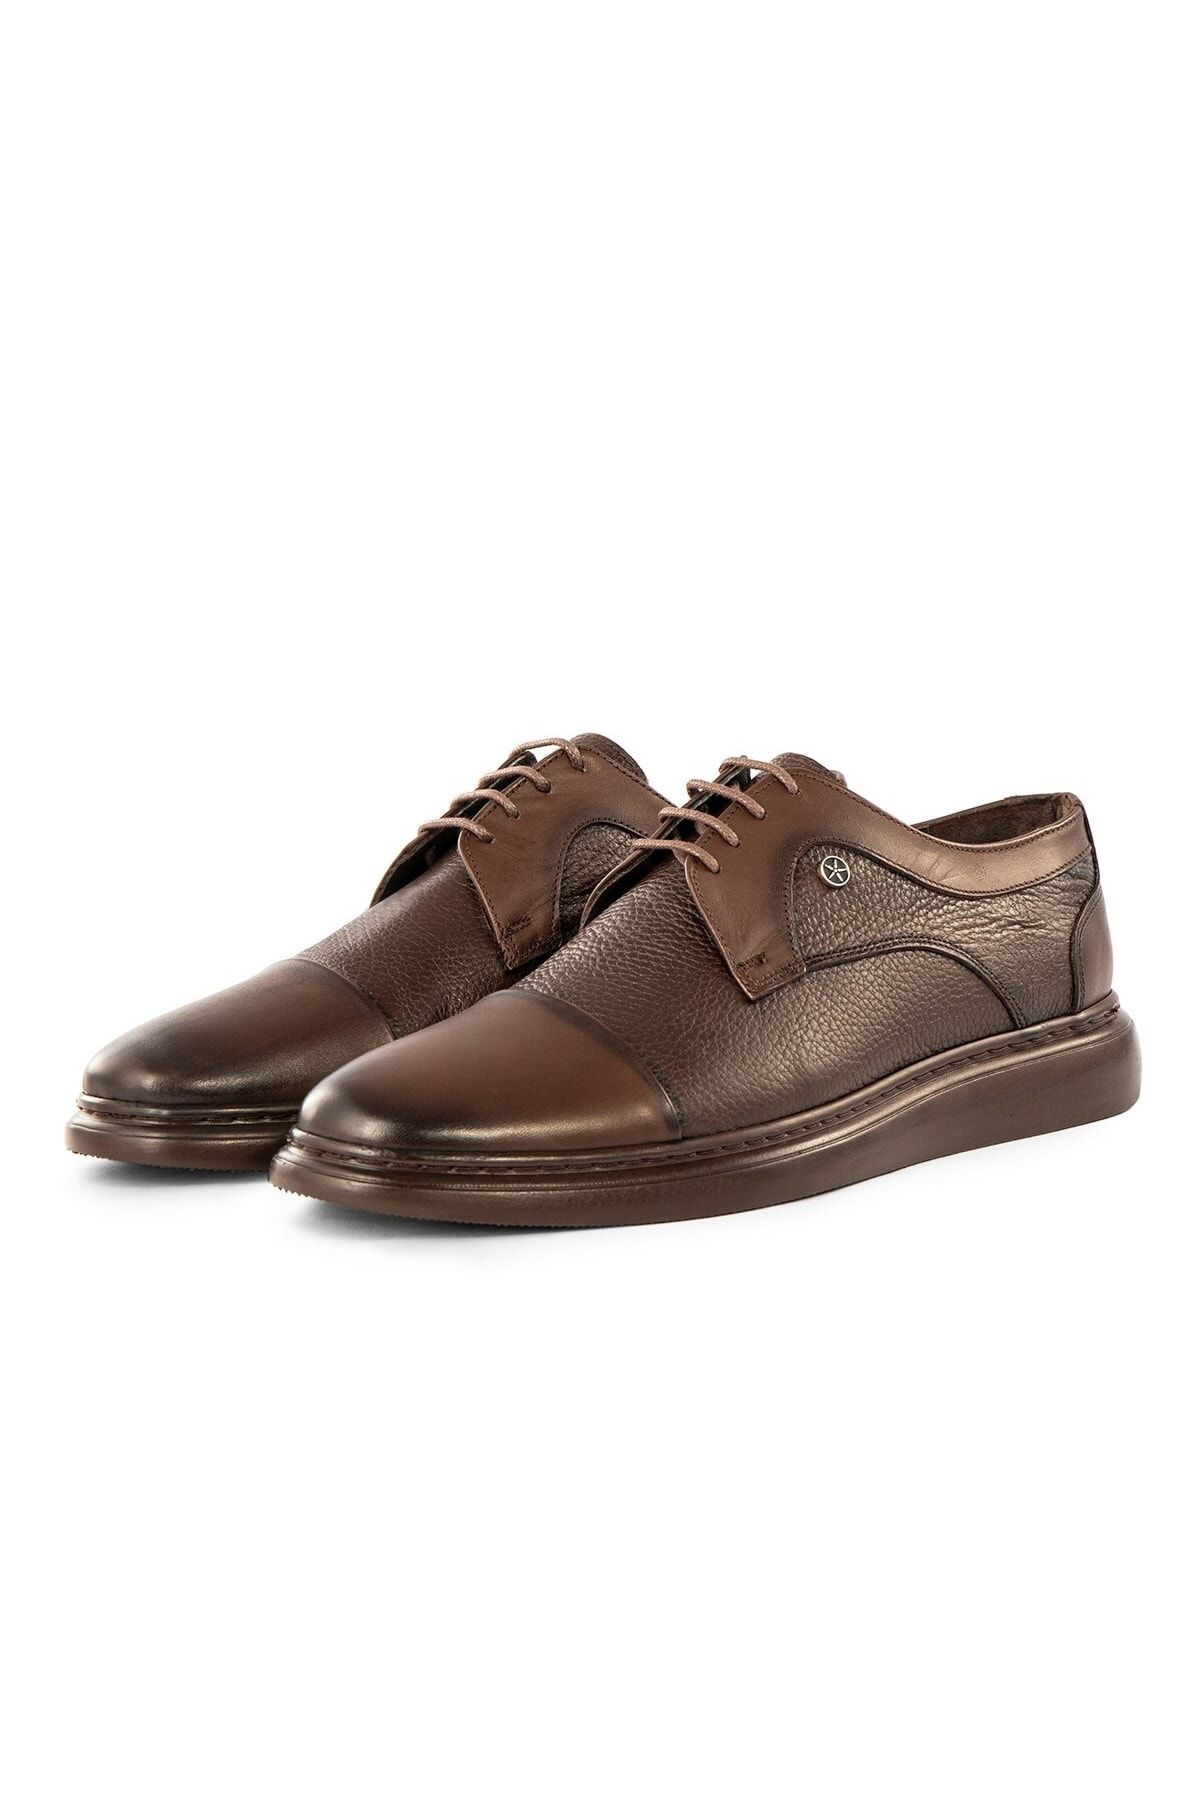 Ducavelli Stern Hakiki Deri Erkek Günlük Klasik Ayakkabı, Hakiki Deri Klasik Ayakkabı, Derby Klasik